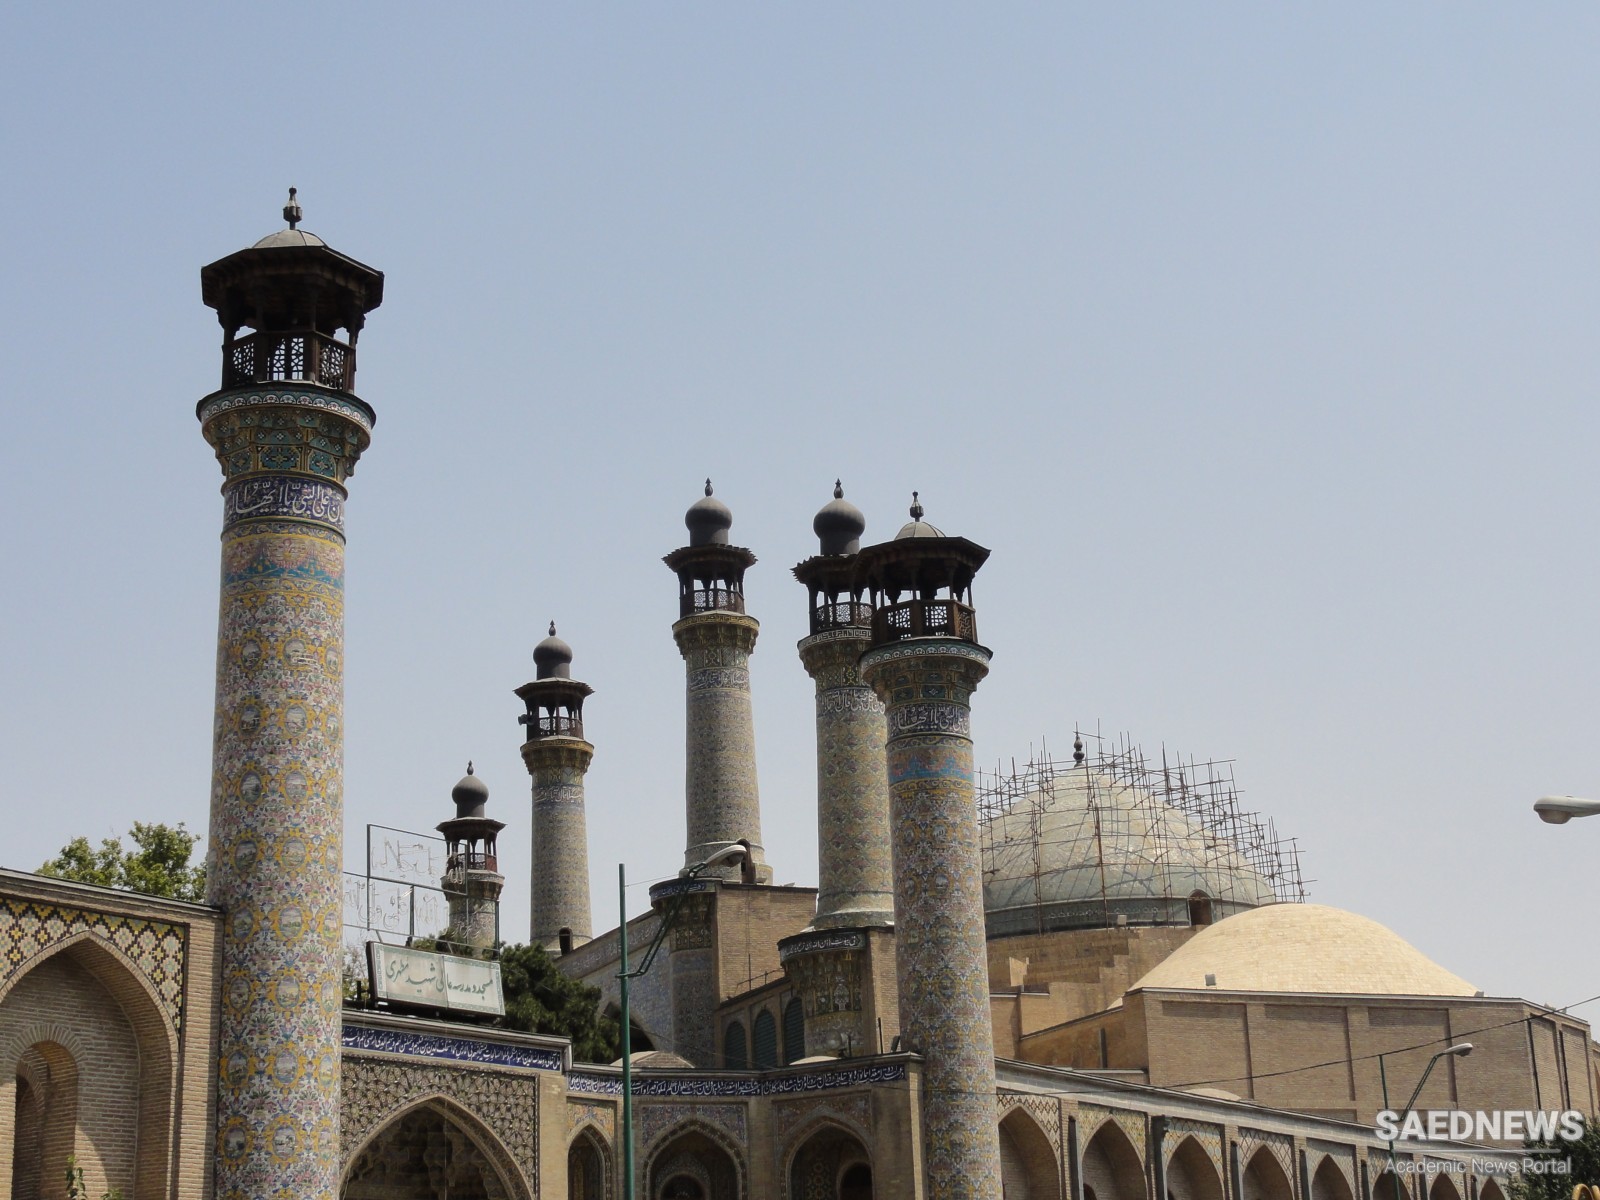 फारस की प्रारंभिक आधुनिक संस्कृति और शिया इस्लाम